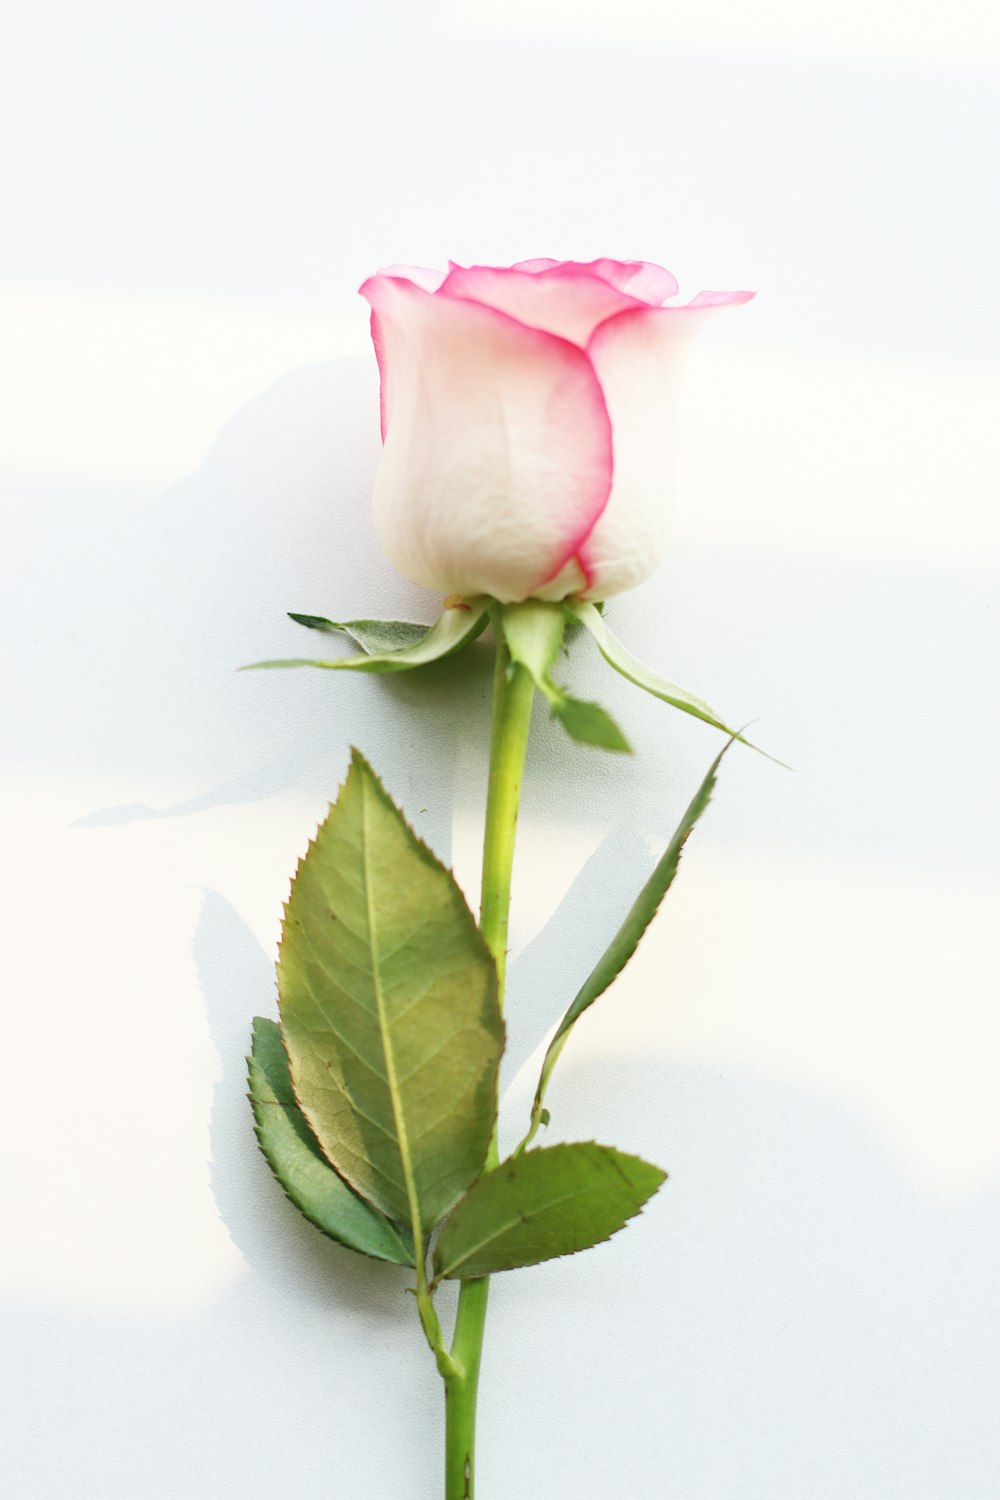 하얀 테이블 위에 앉아 있는 분홍색 장미 한 송이